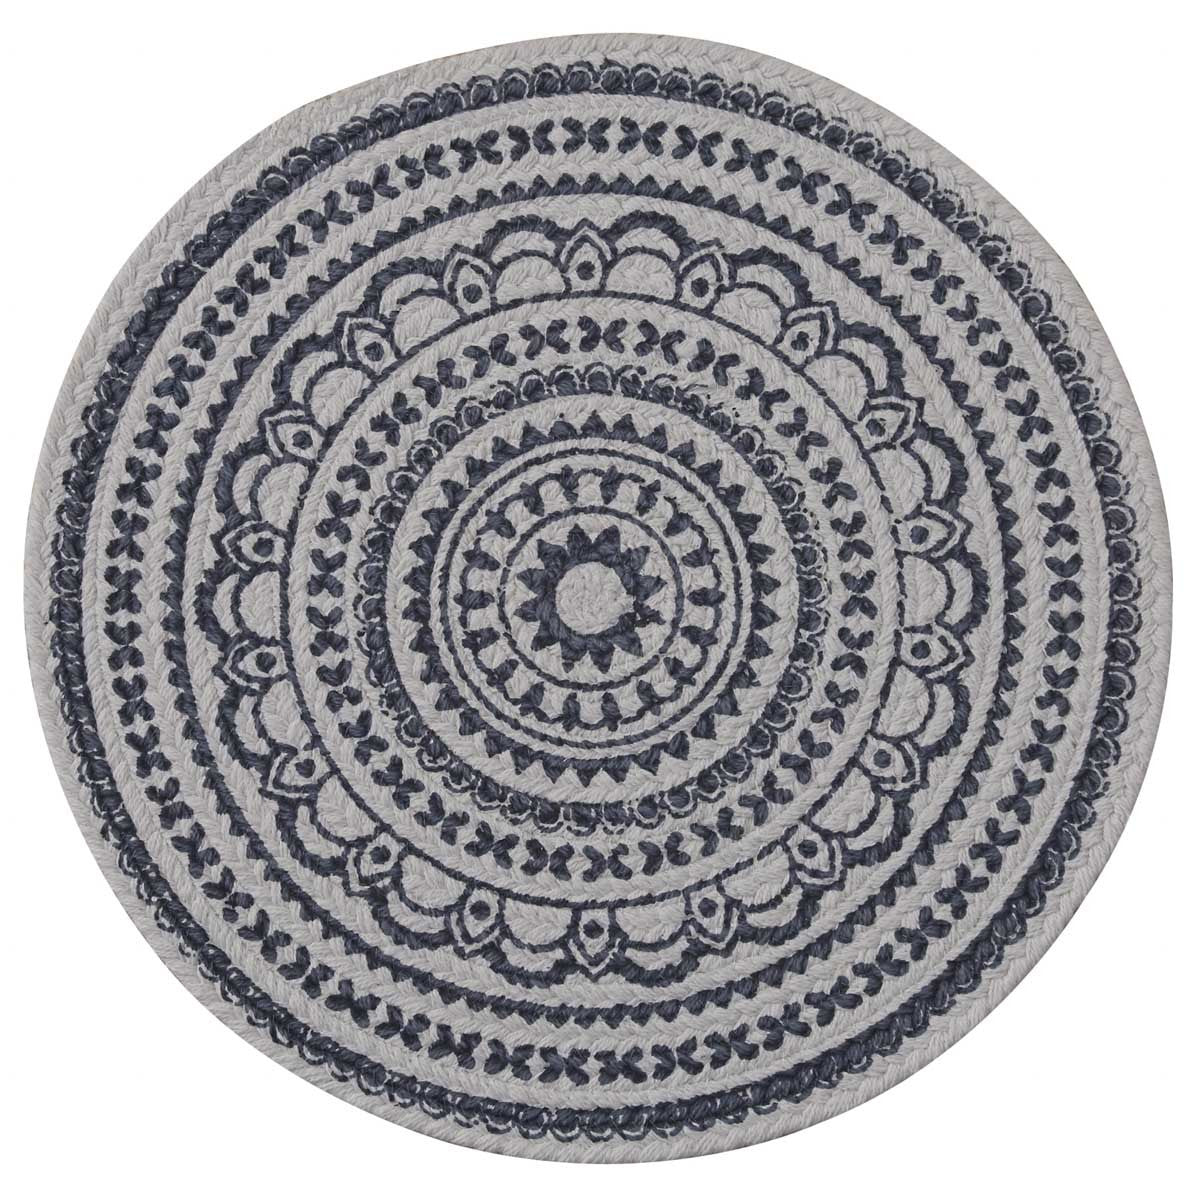 Zuri Medallion Printed Round Placemat Set-Navy